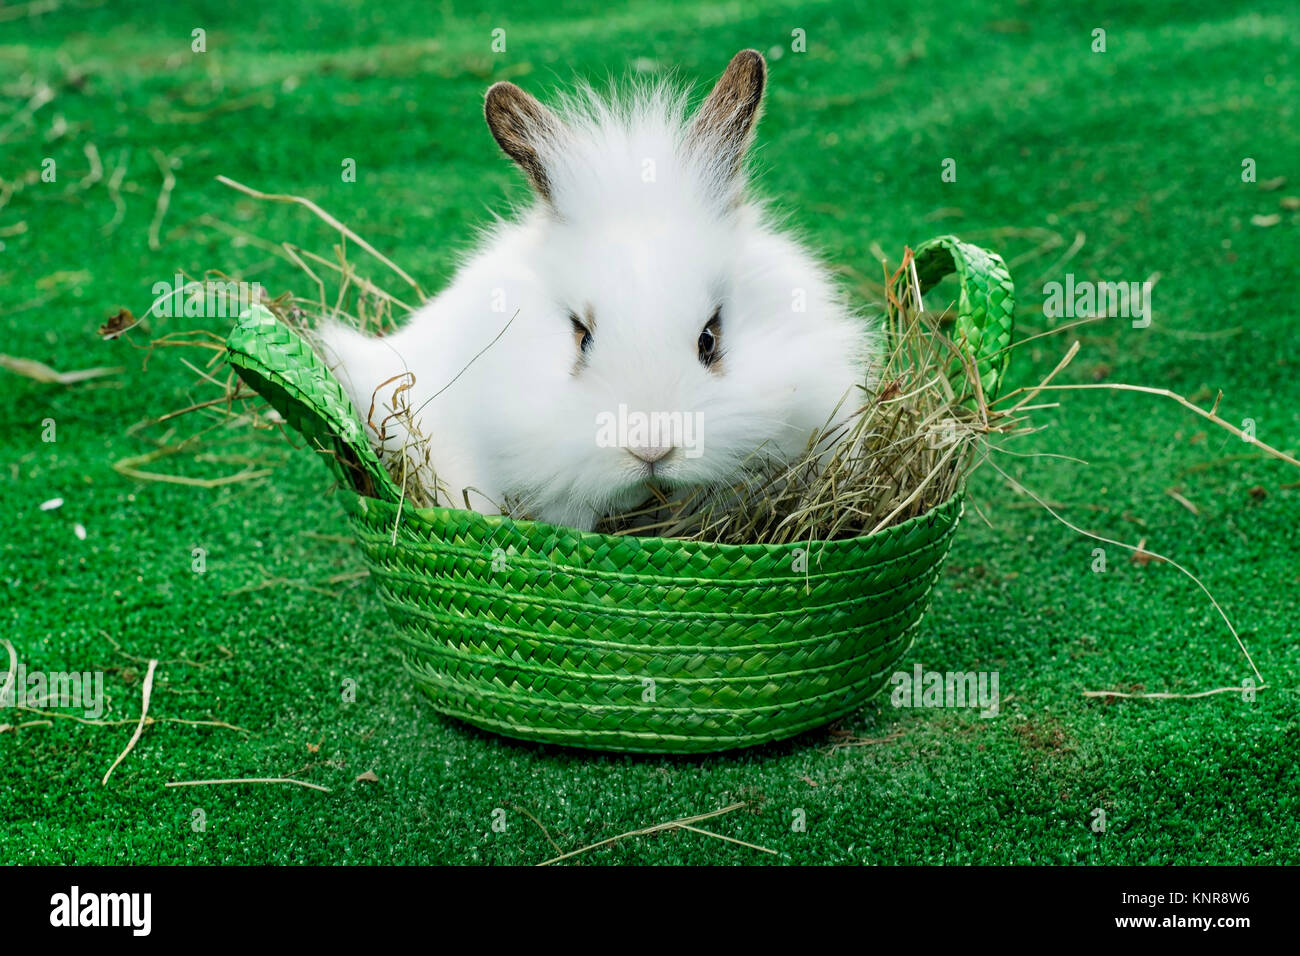 Osterhase - easter rabbit Stock Photo